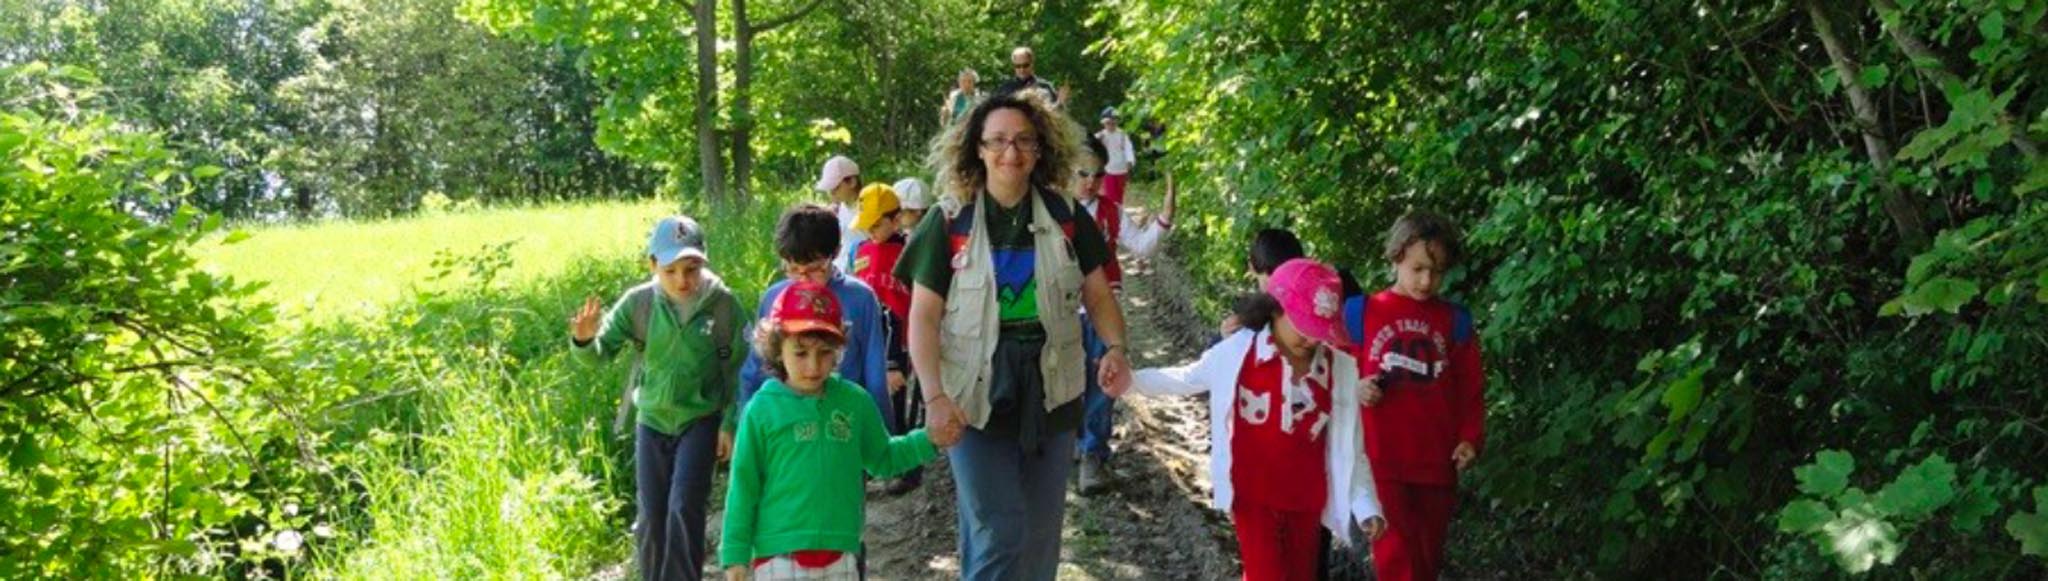 La Via del Guerin Meschino: escursioni guidate per scuole e gruppi nel Parco Dei Monti Sibillini